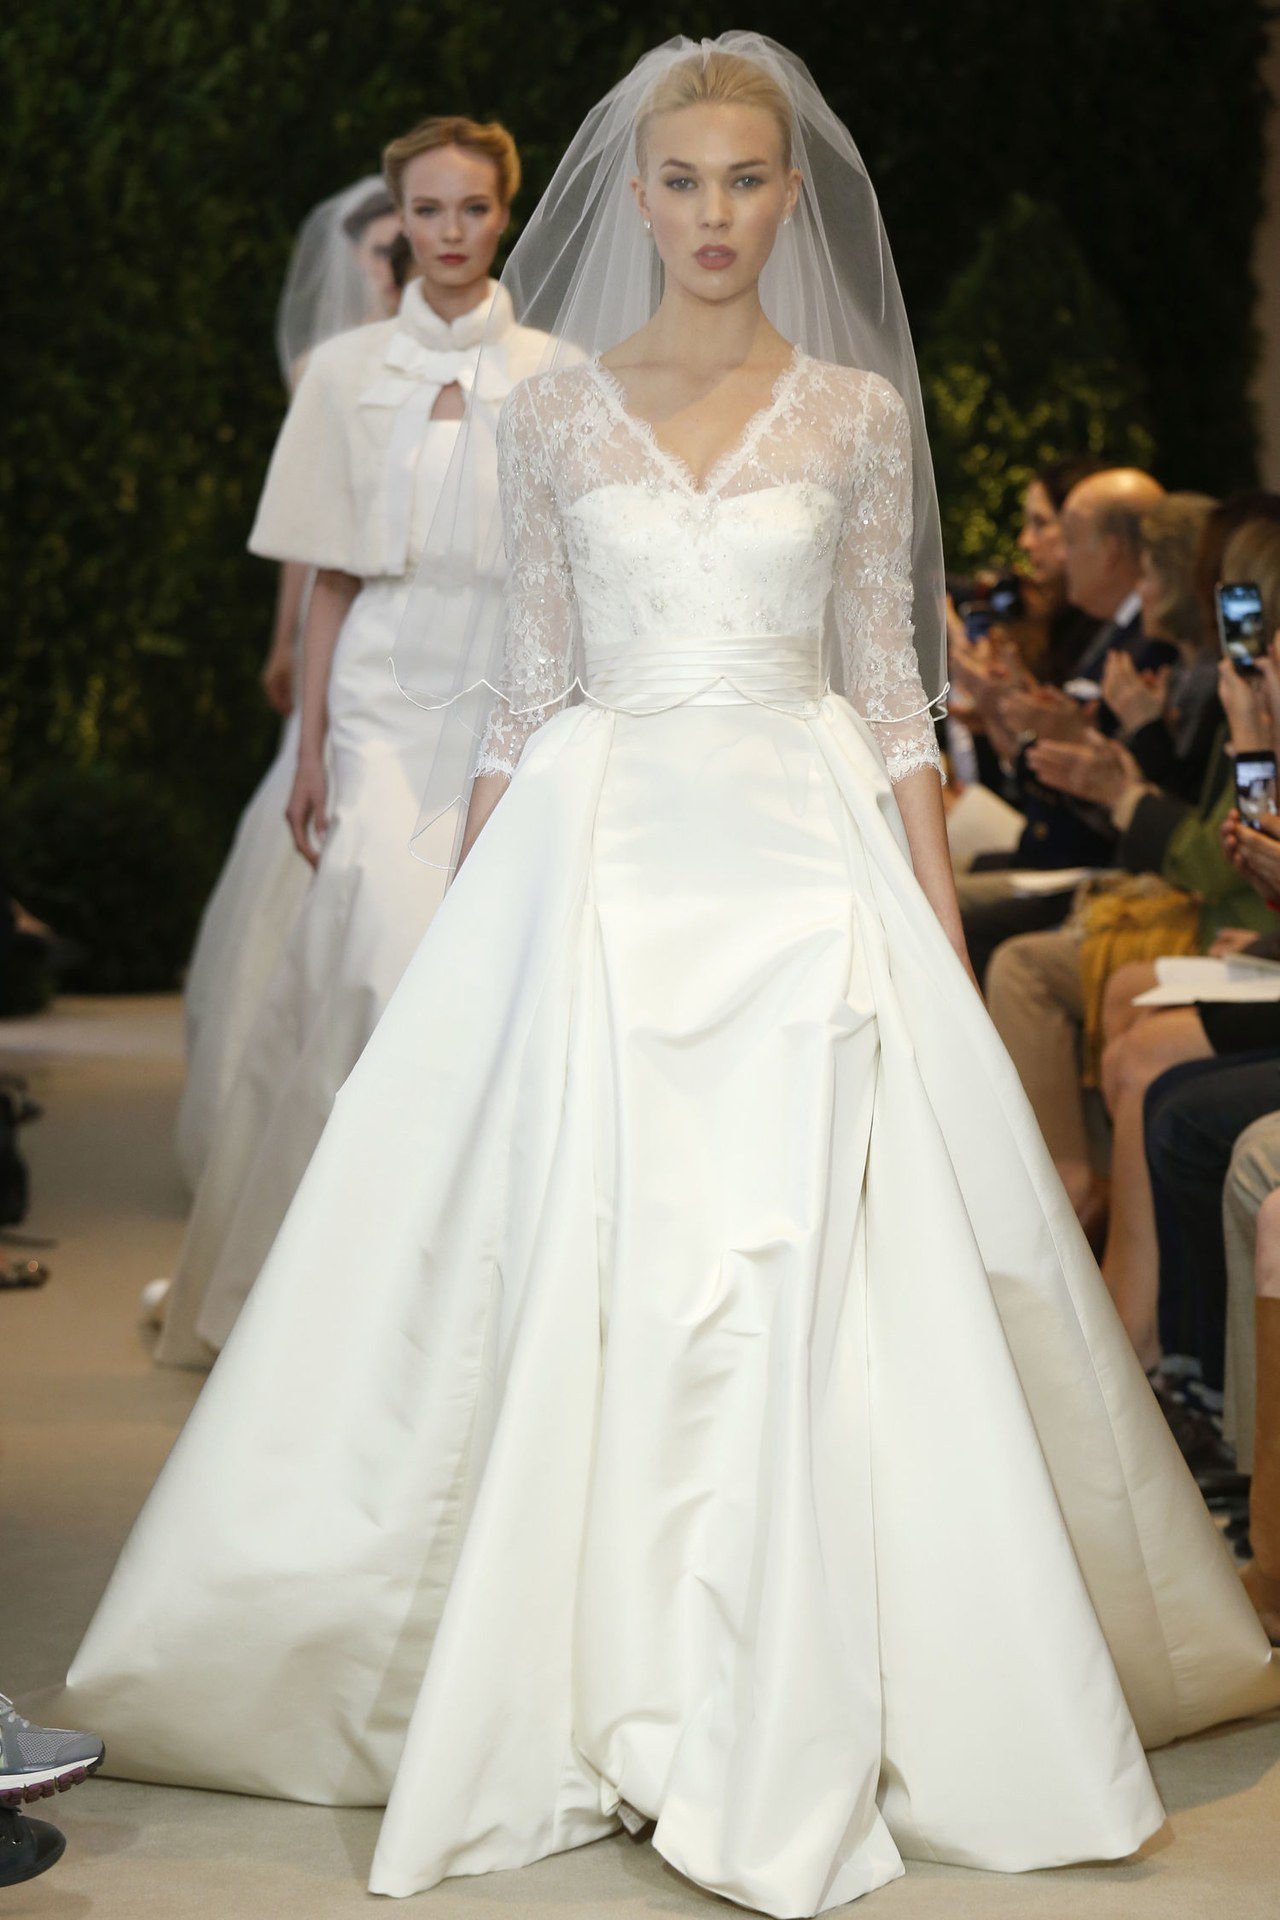 4 elizabeth taylor first wedding dresses inspired by wedding gowns conrad hilton celebrity weddings 0626